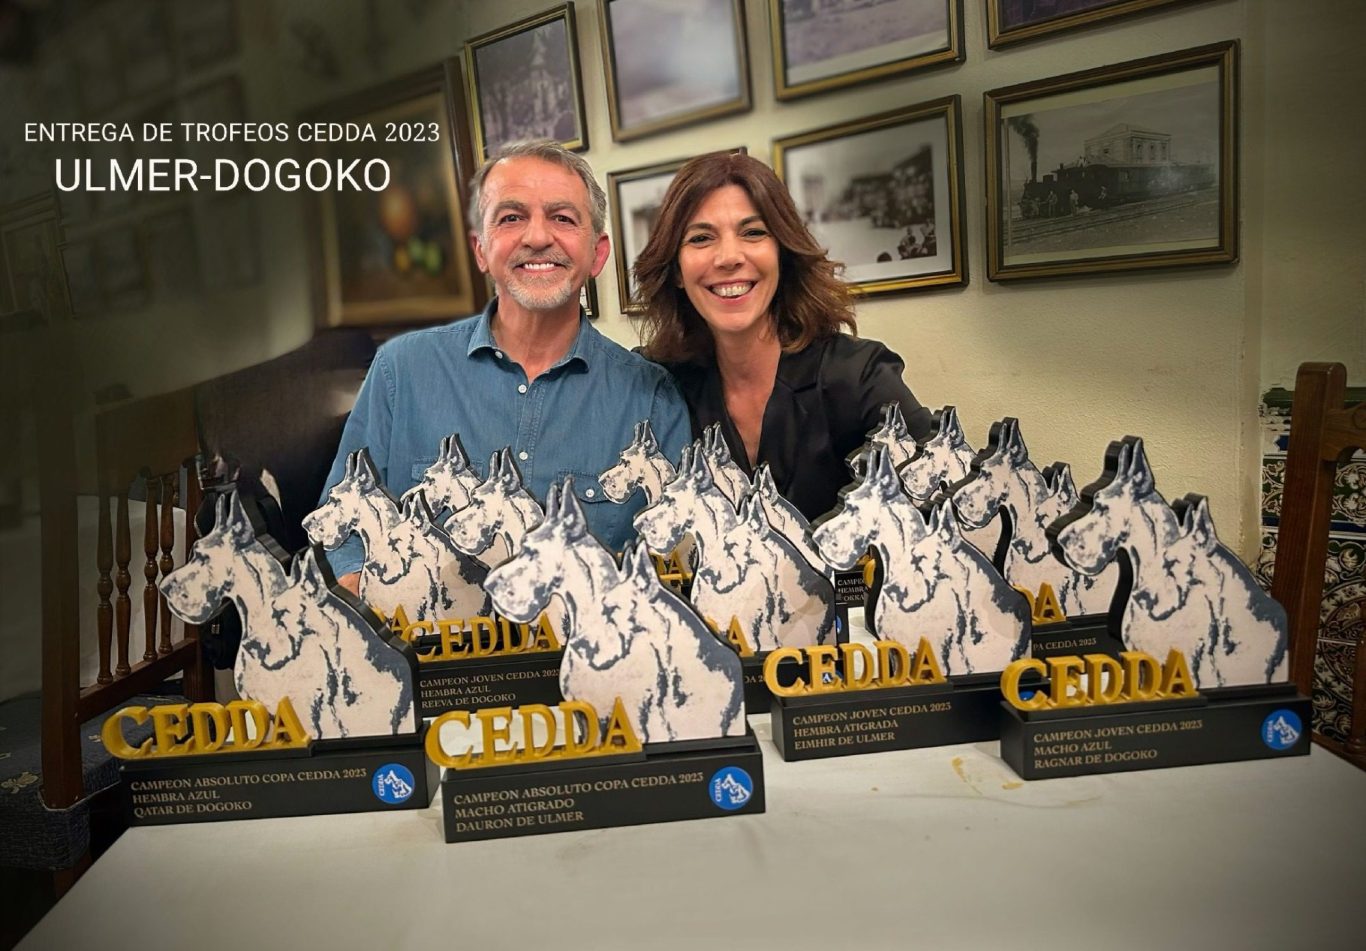 TOFEOS CEDDA 2023, COPA CEDDA Y CAMPEON DE CLUB DEL DOGO ALEMAN ESPAÑOL CEDDA